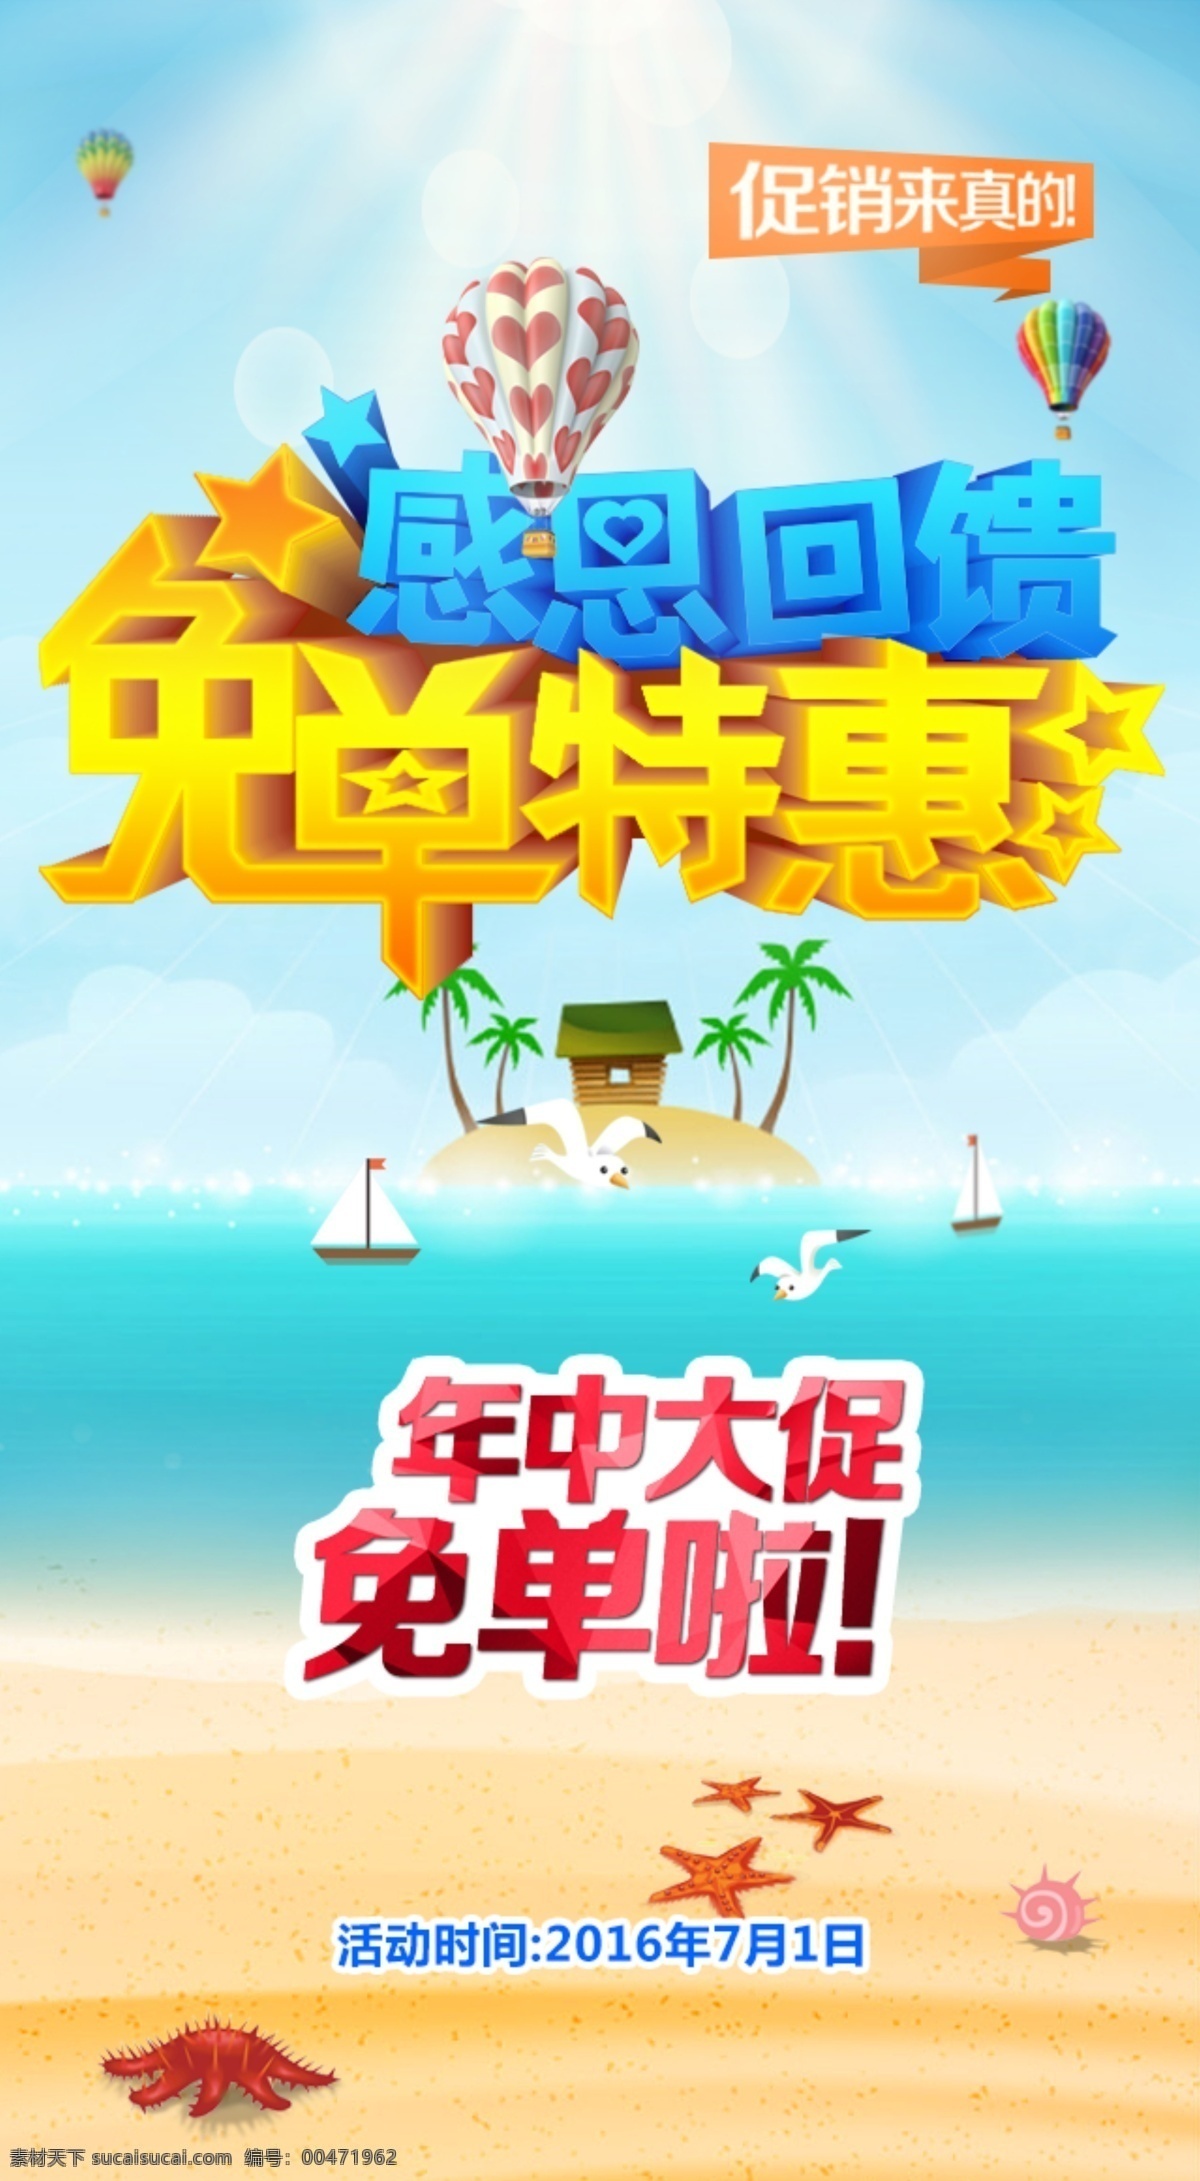 手机端 夏季 夏日 天空 大海 沙滩 促销 活动 宣传海报 年中促销 psd素材 青色 天蓝色